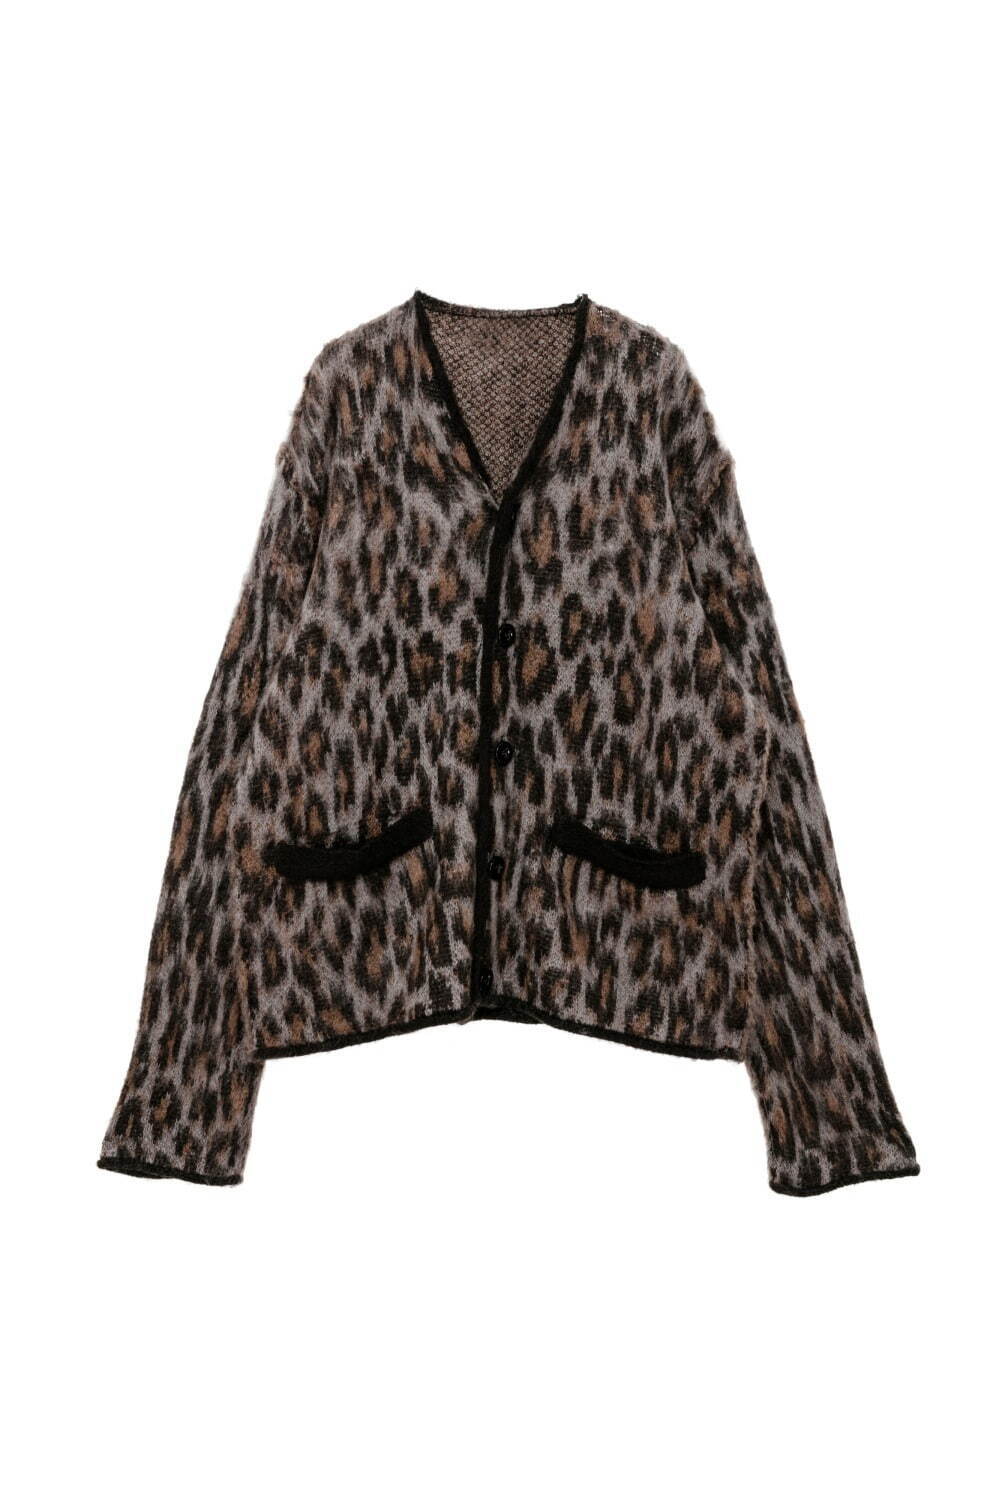 Leopard Jacquard Knit Cardigan 71,500円